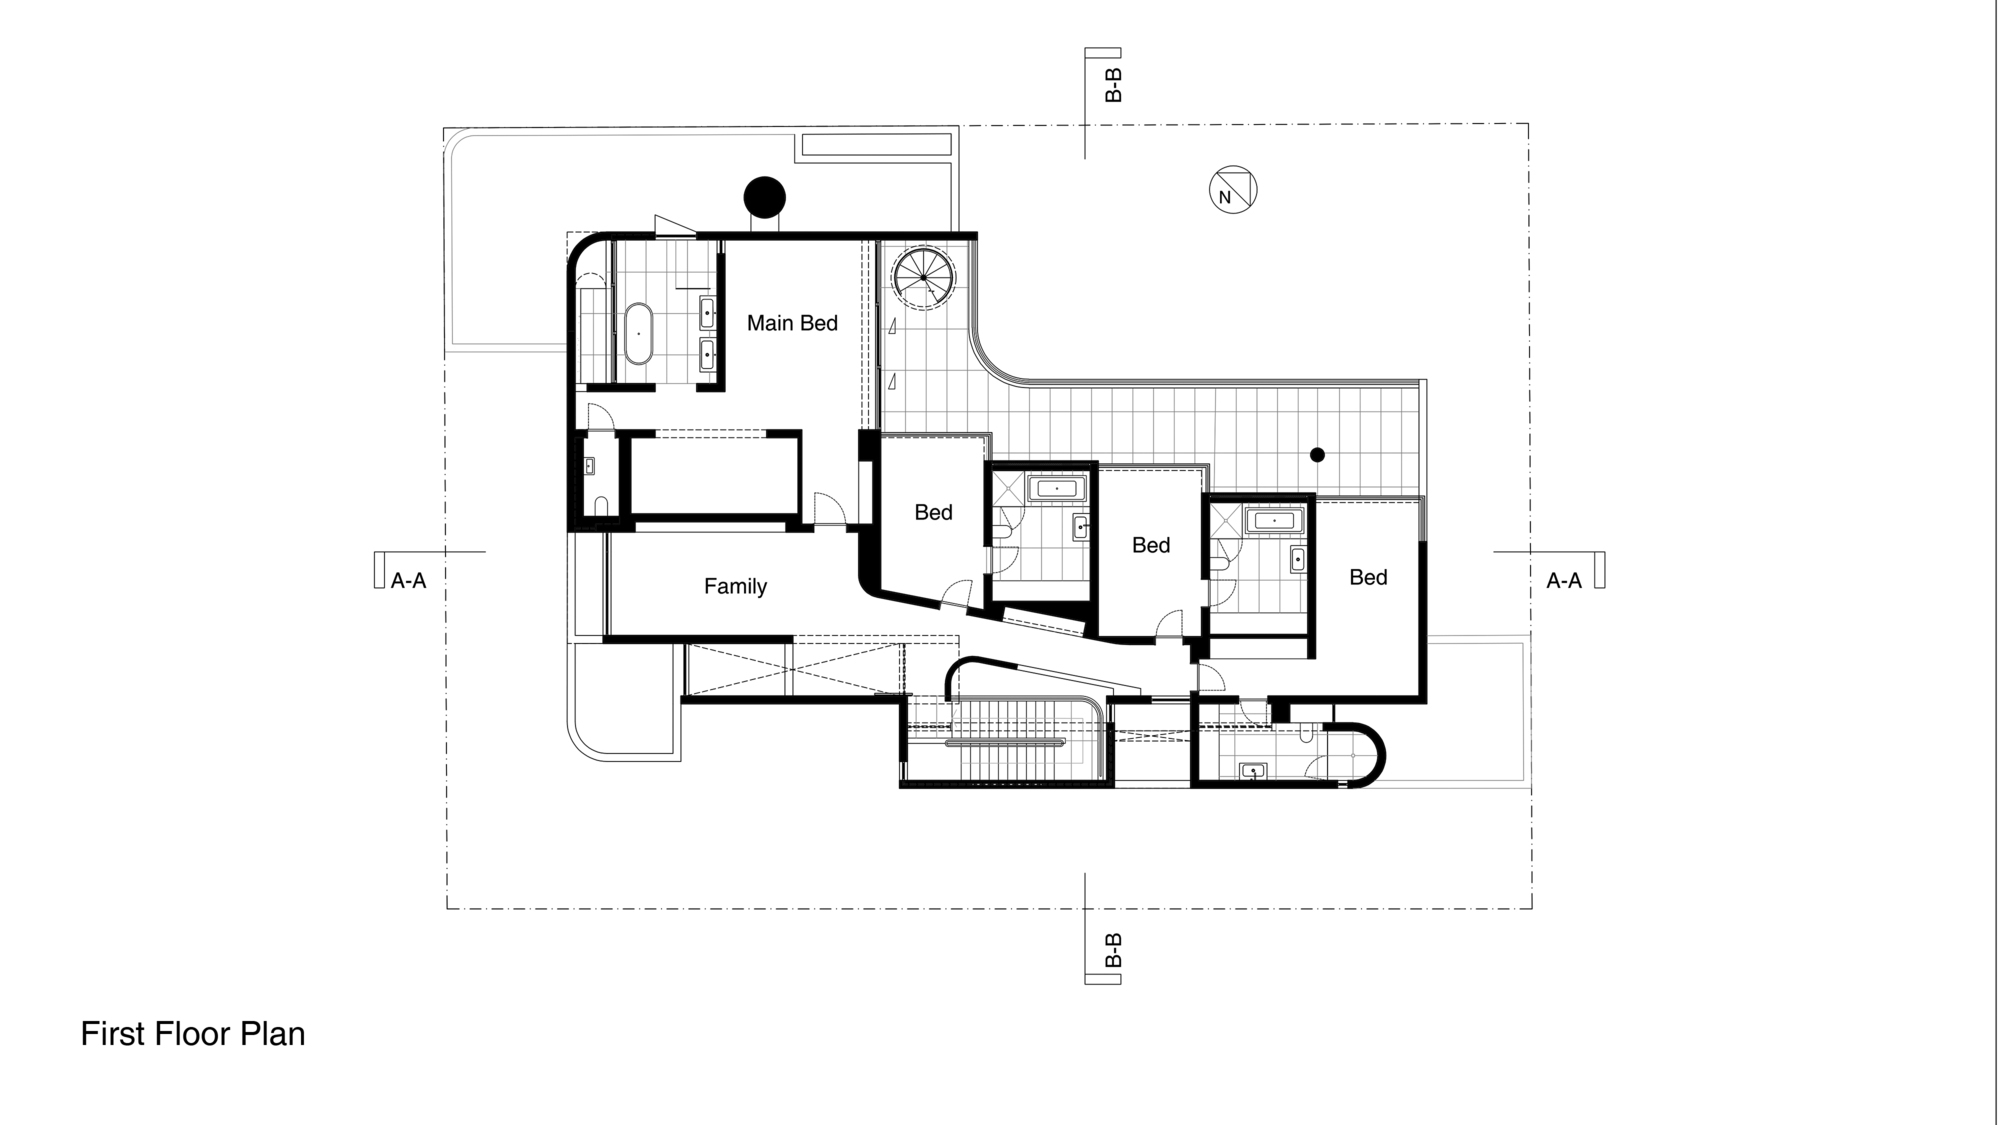 9_023_216_OVD_First_Floor_Plan.jpg